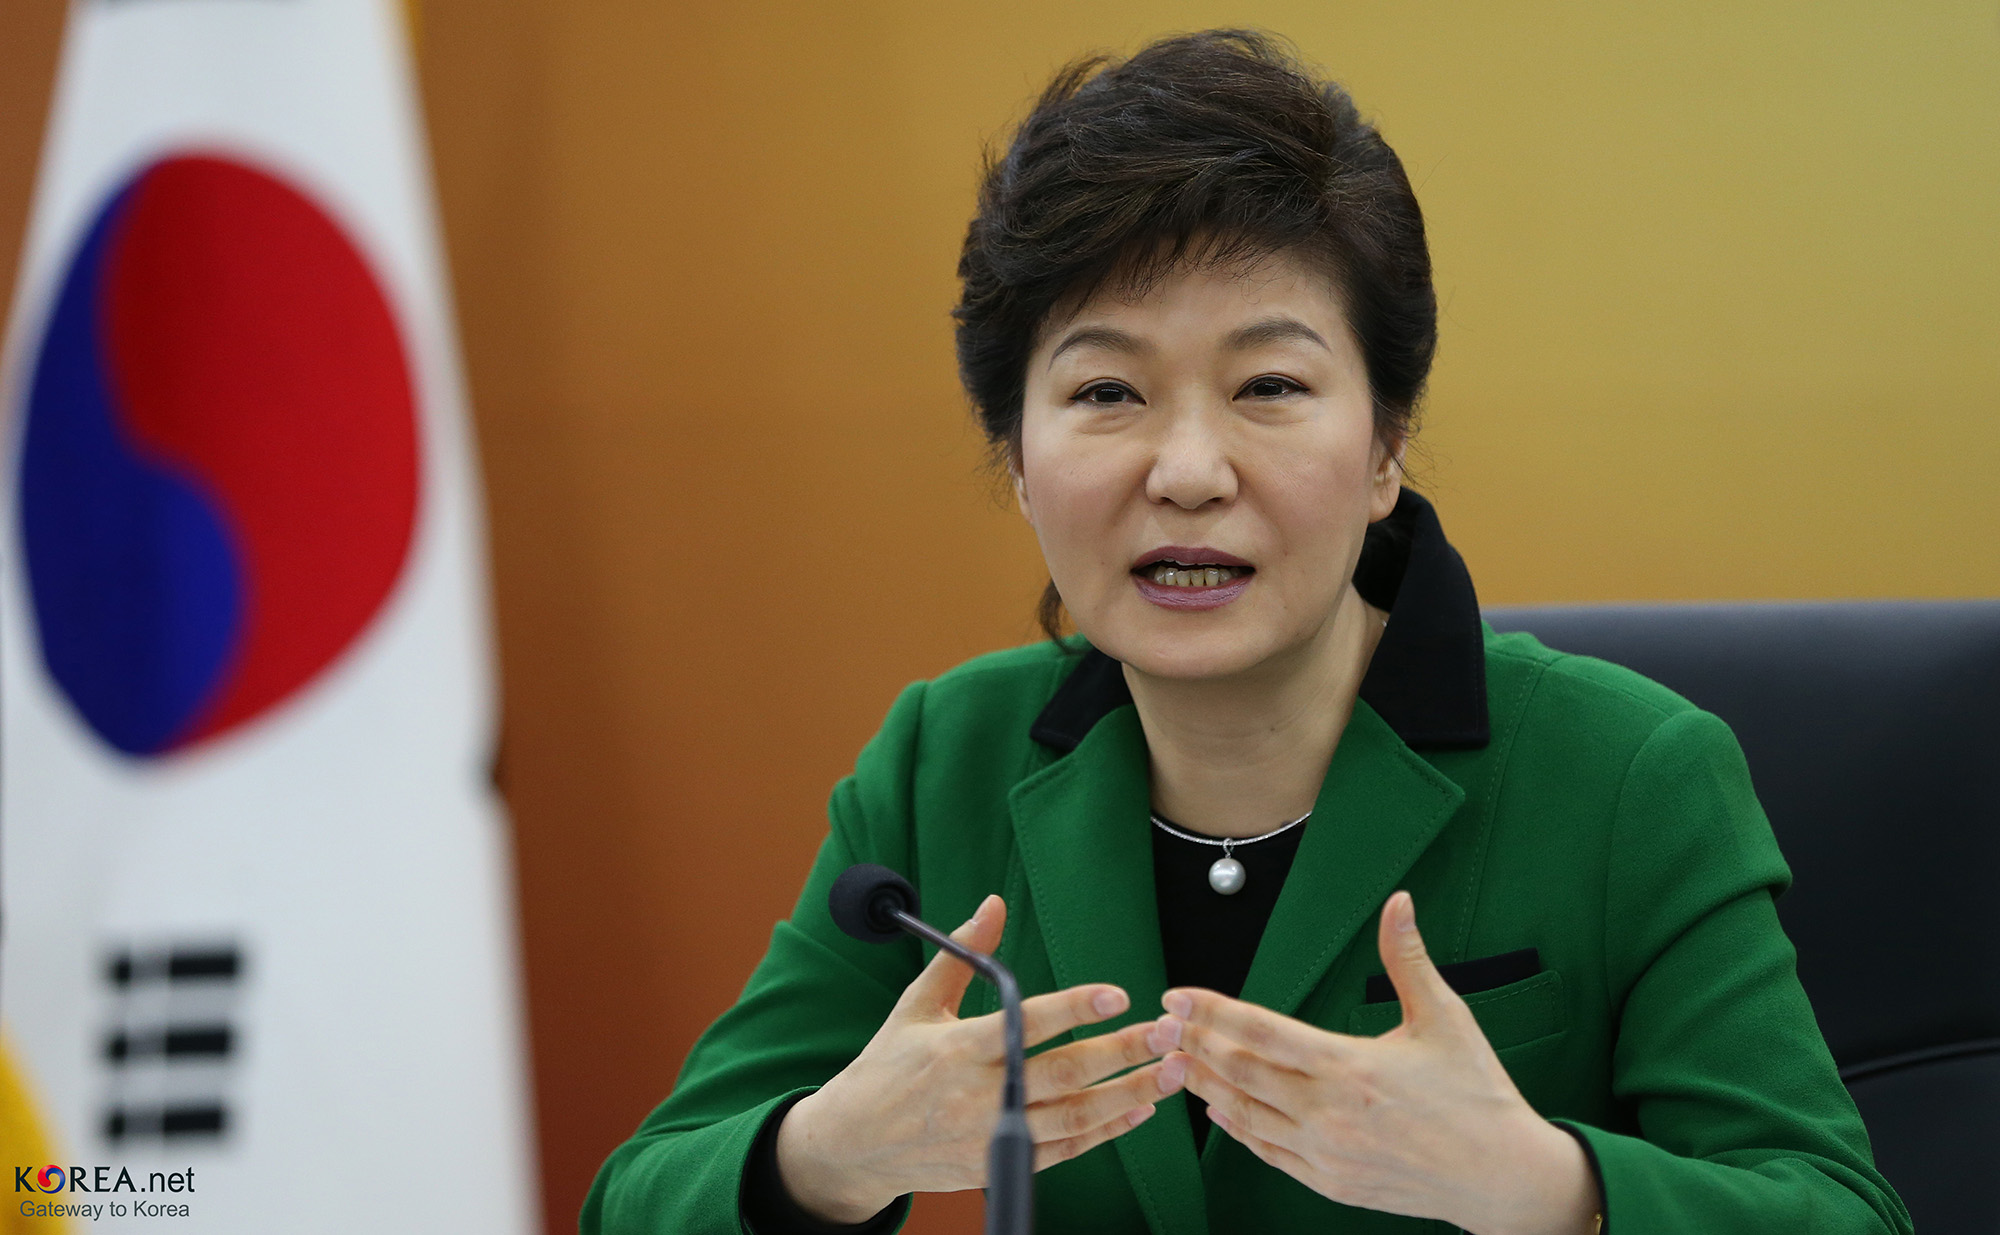 President Park Geun-hye South Korea